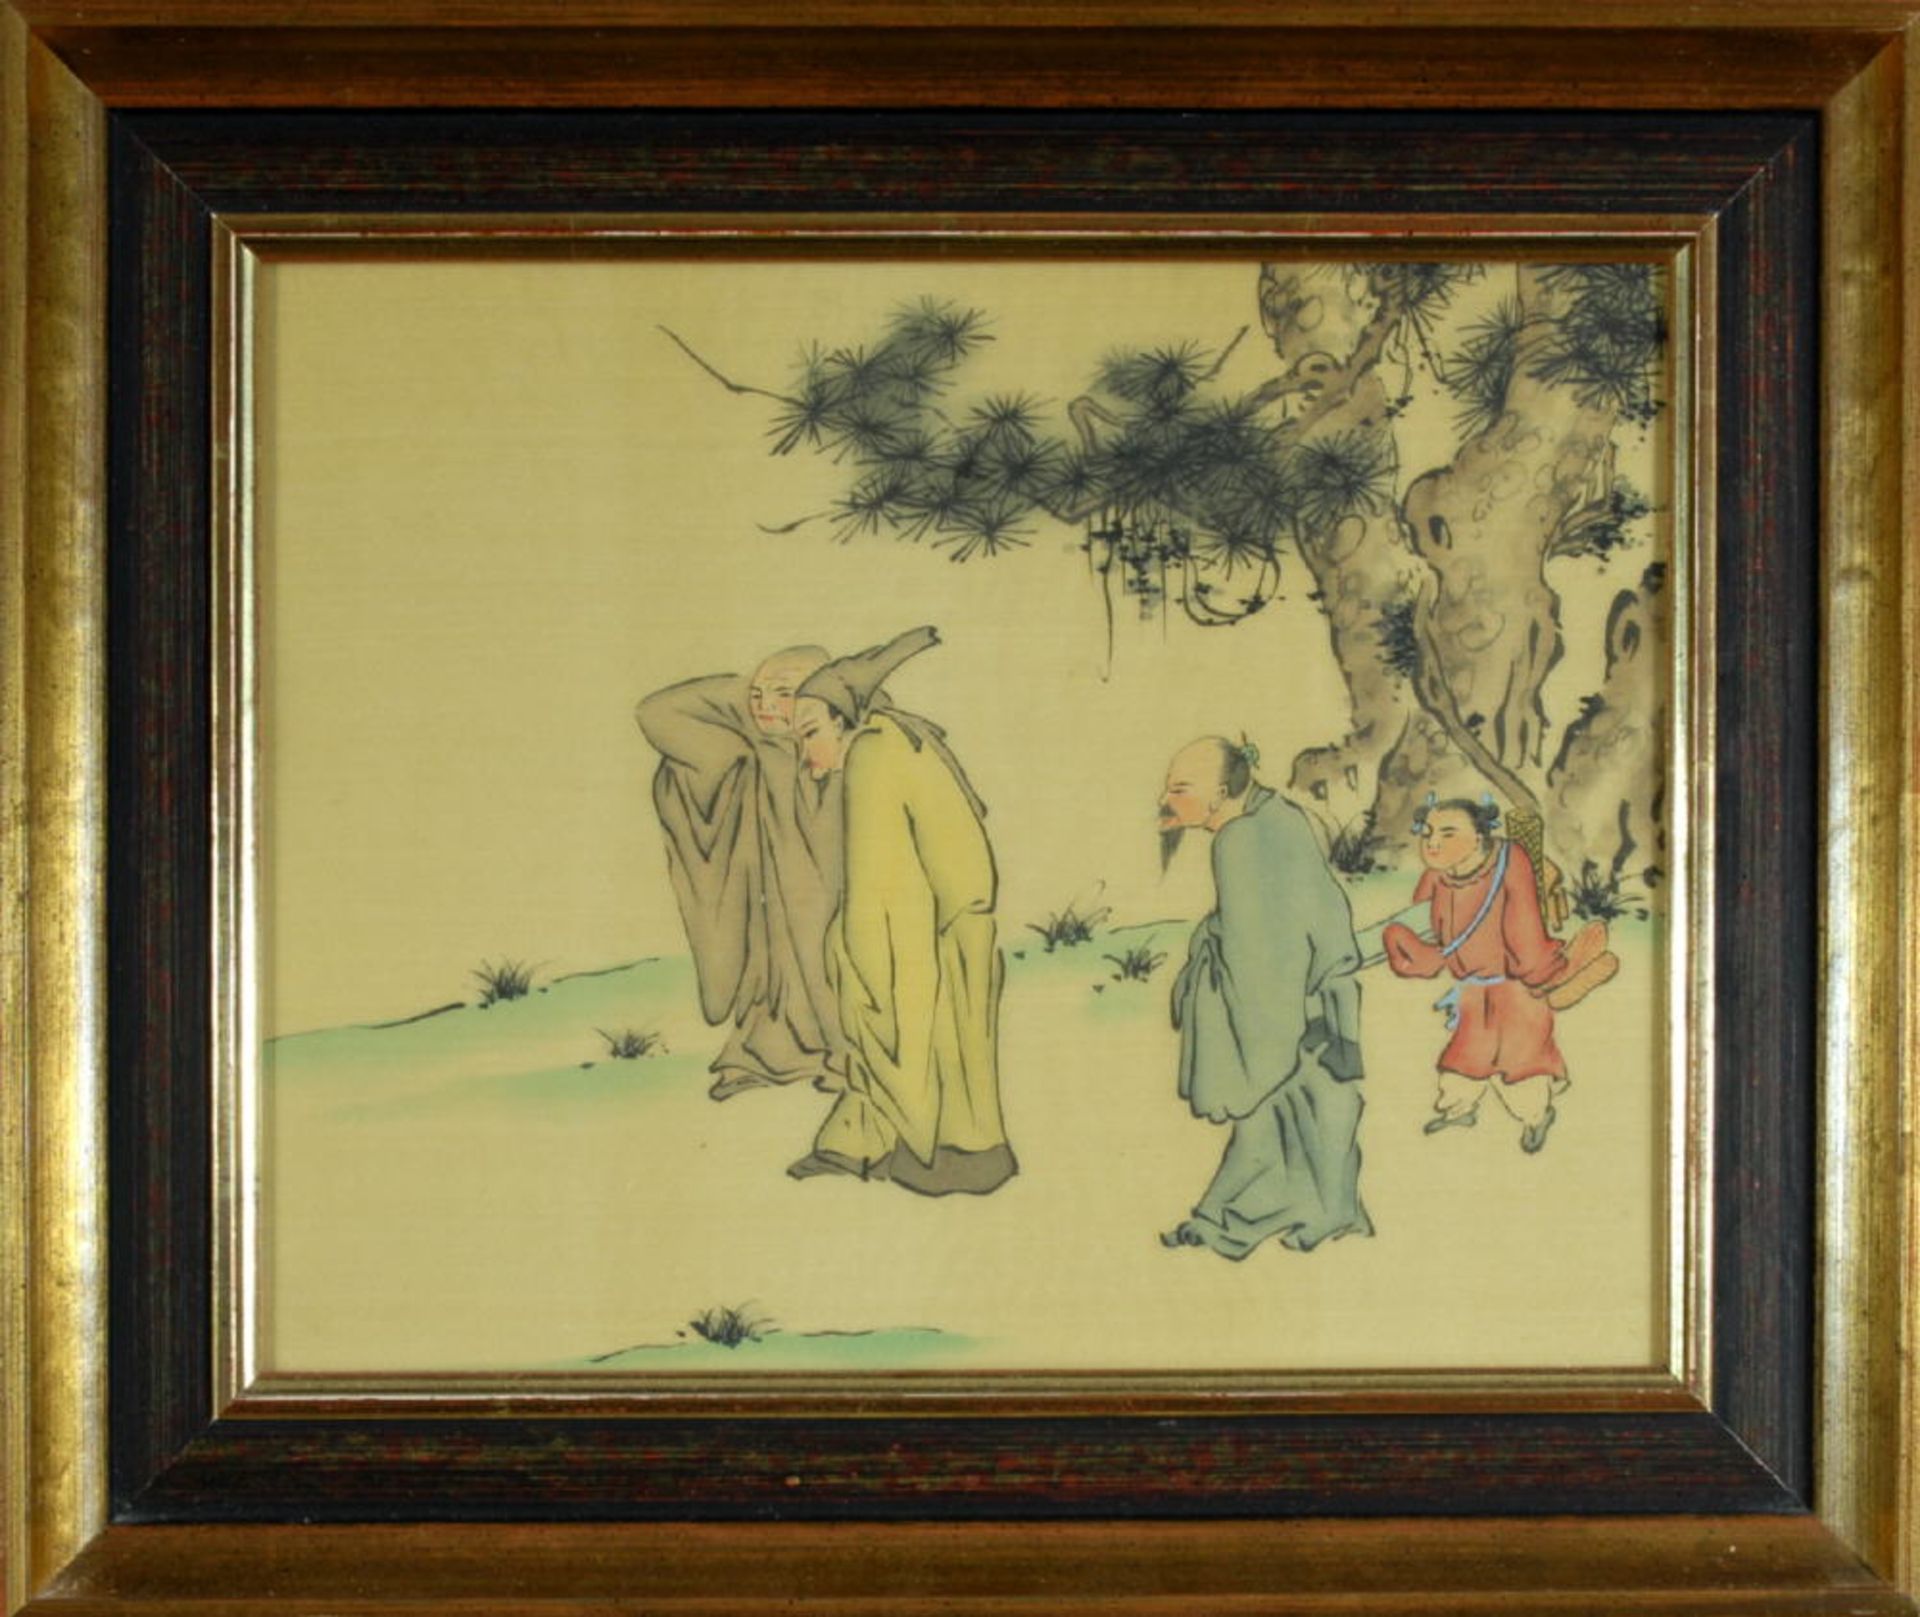 Chinesischer Künstler des 19./20. Jh.Federzeichnung, aquarell., auf Seide, 26 x 33 cm, " Personen in